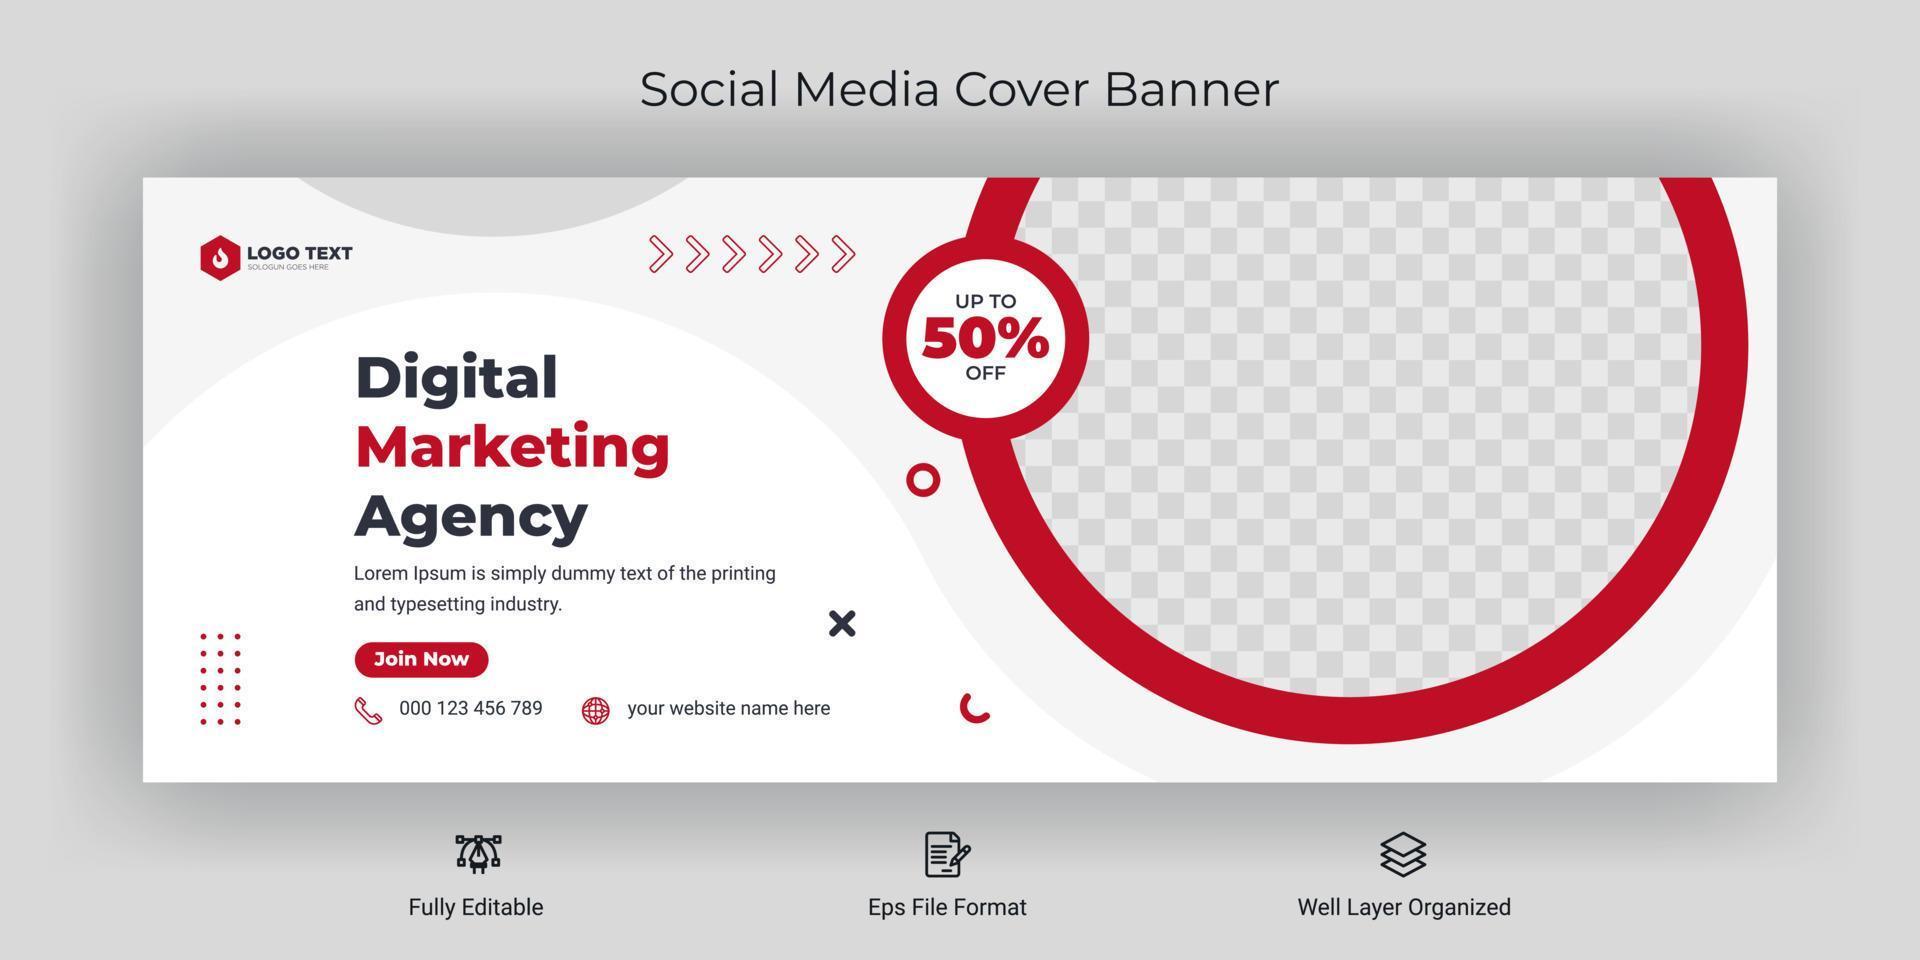 plantilla de publicación de banner de portada de redes sociales de marketing de negocios corporativos creativos vector